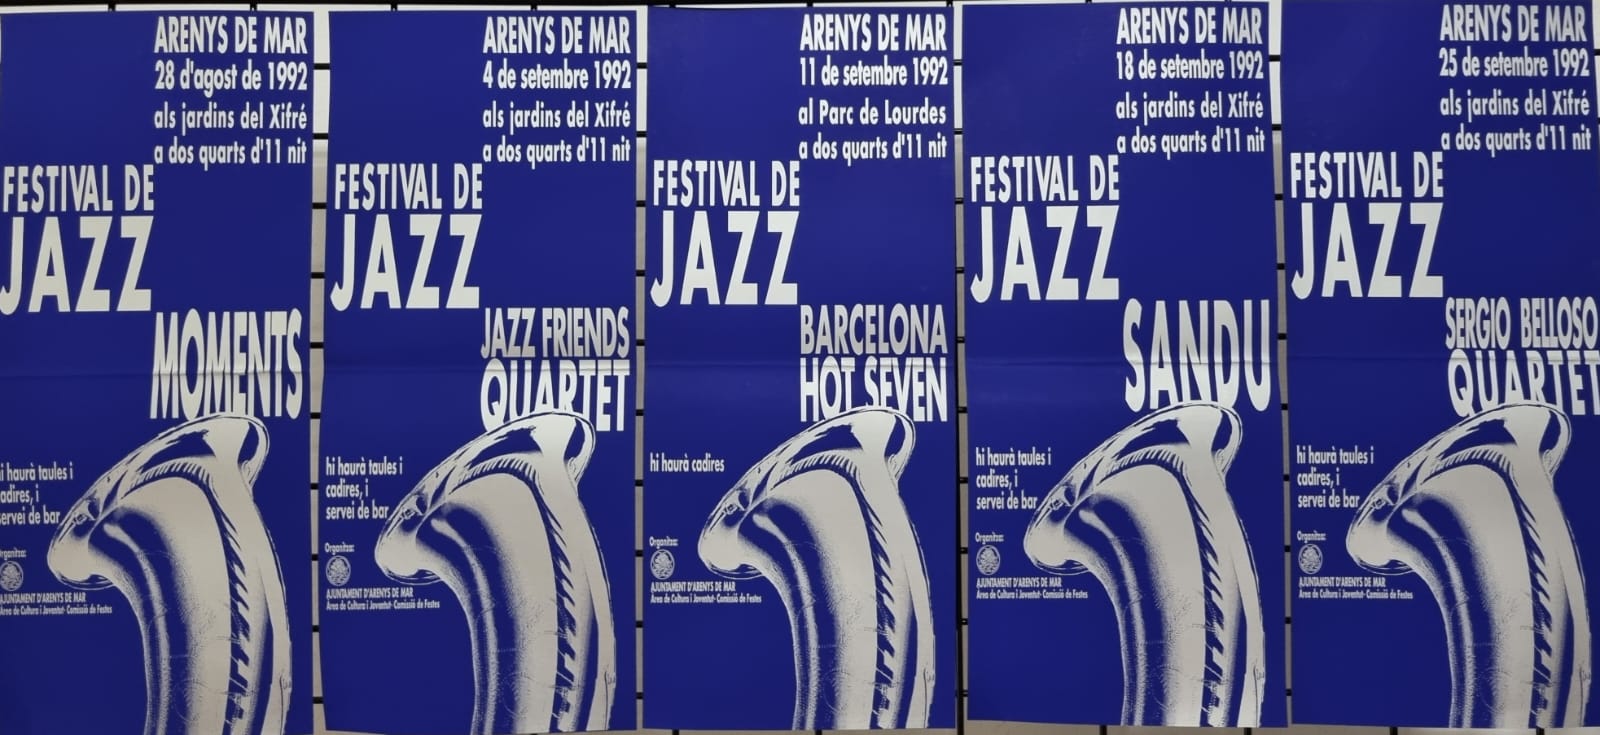 Imatges del 1r Festival de Jazz d'Arenys de Mar - 1992 - Foto 42113866